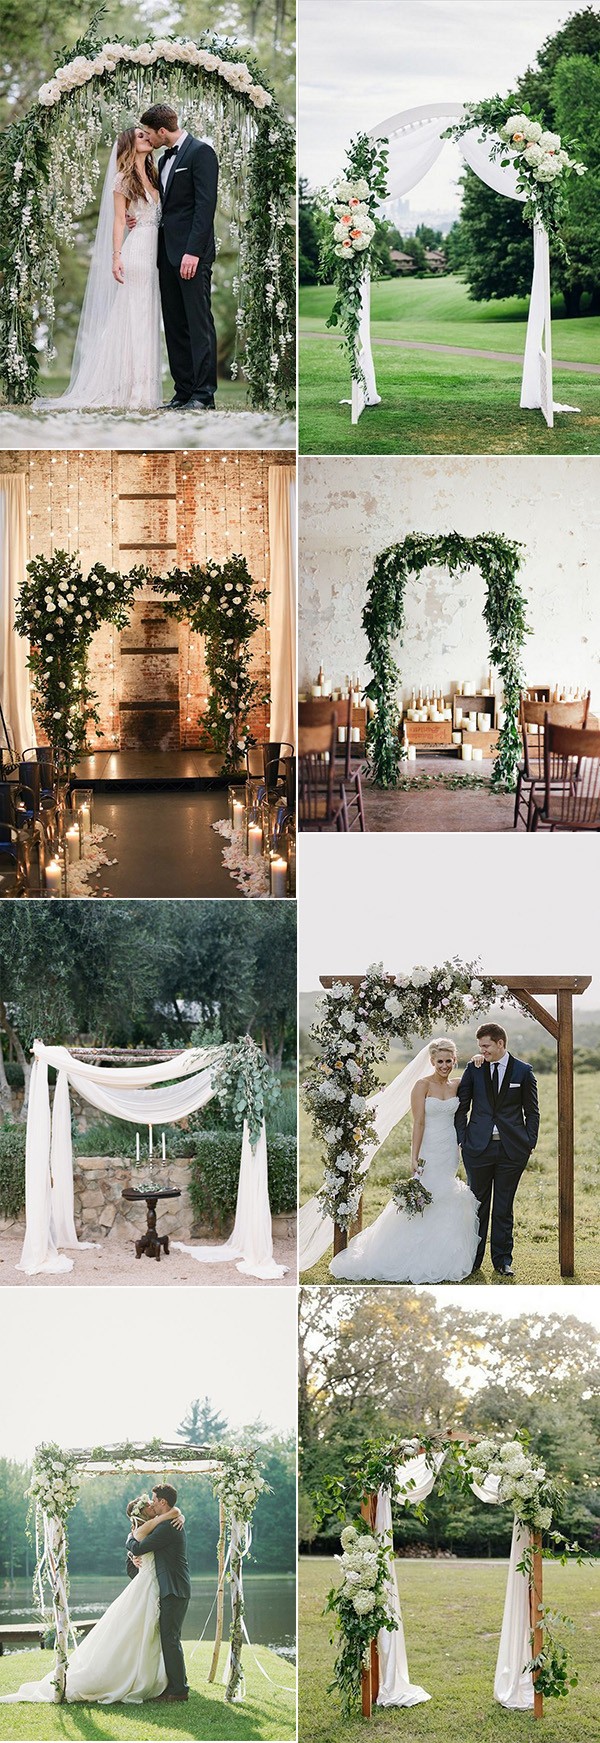 chic greenery wedding arch decoration ideas